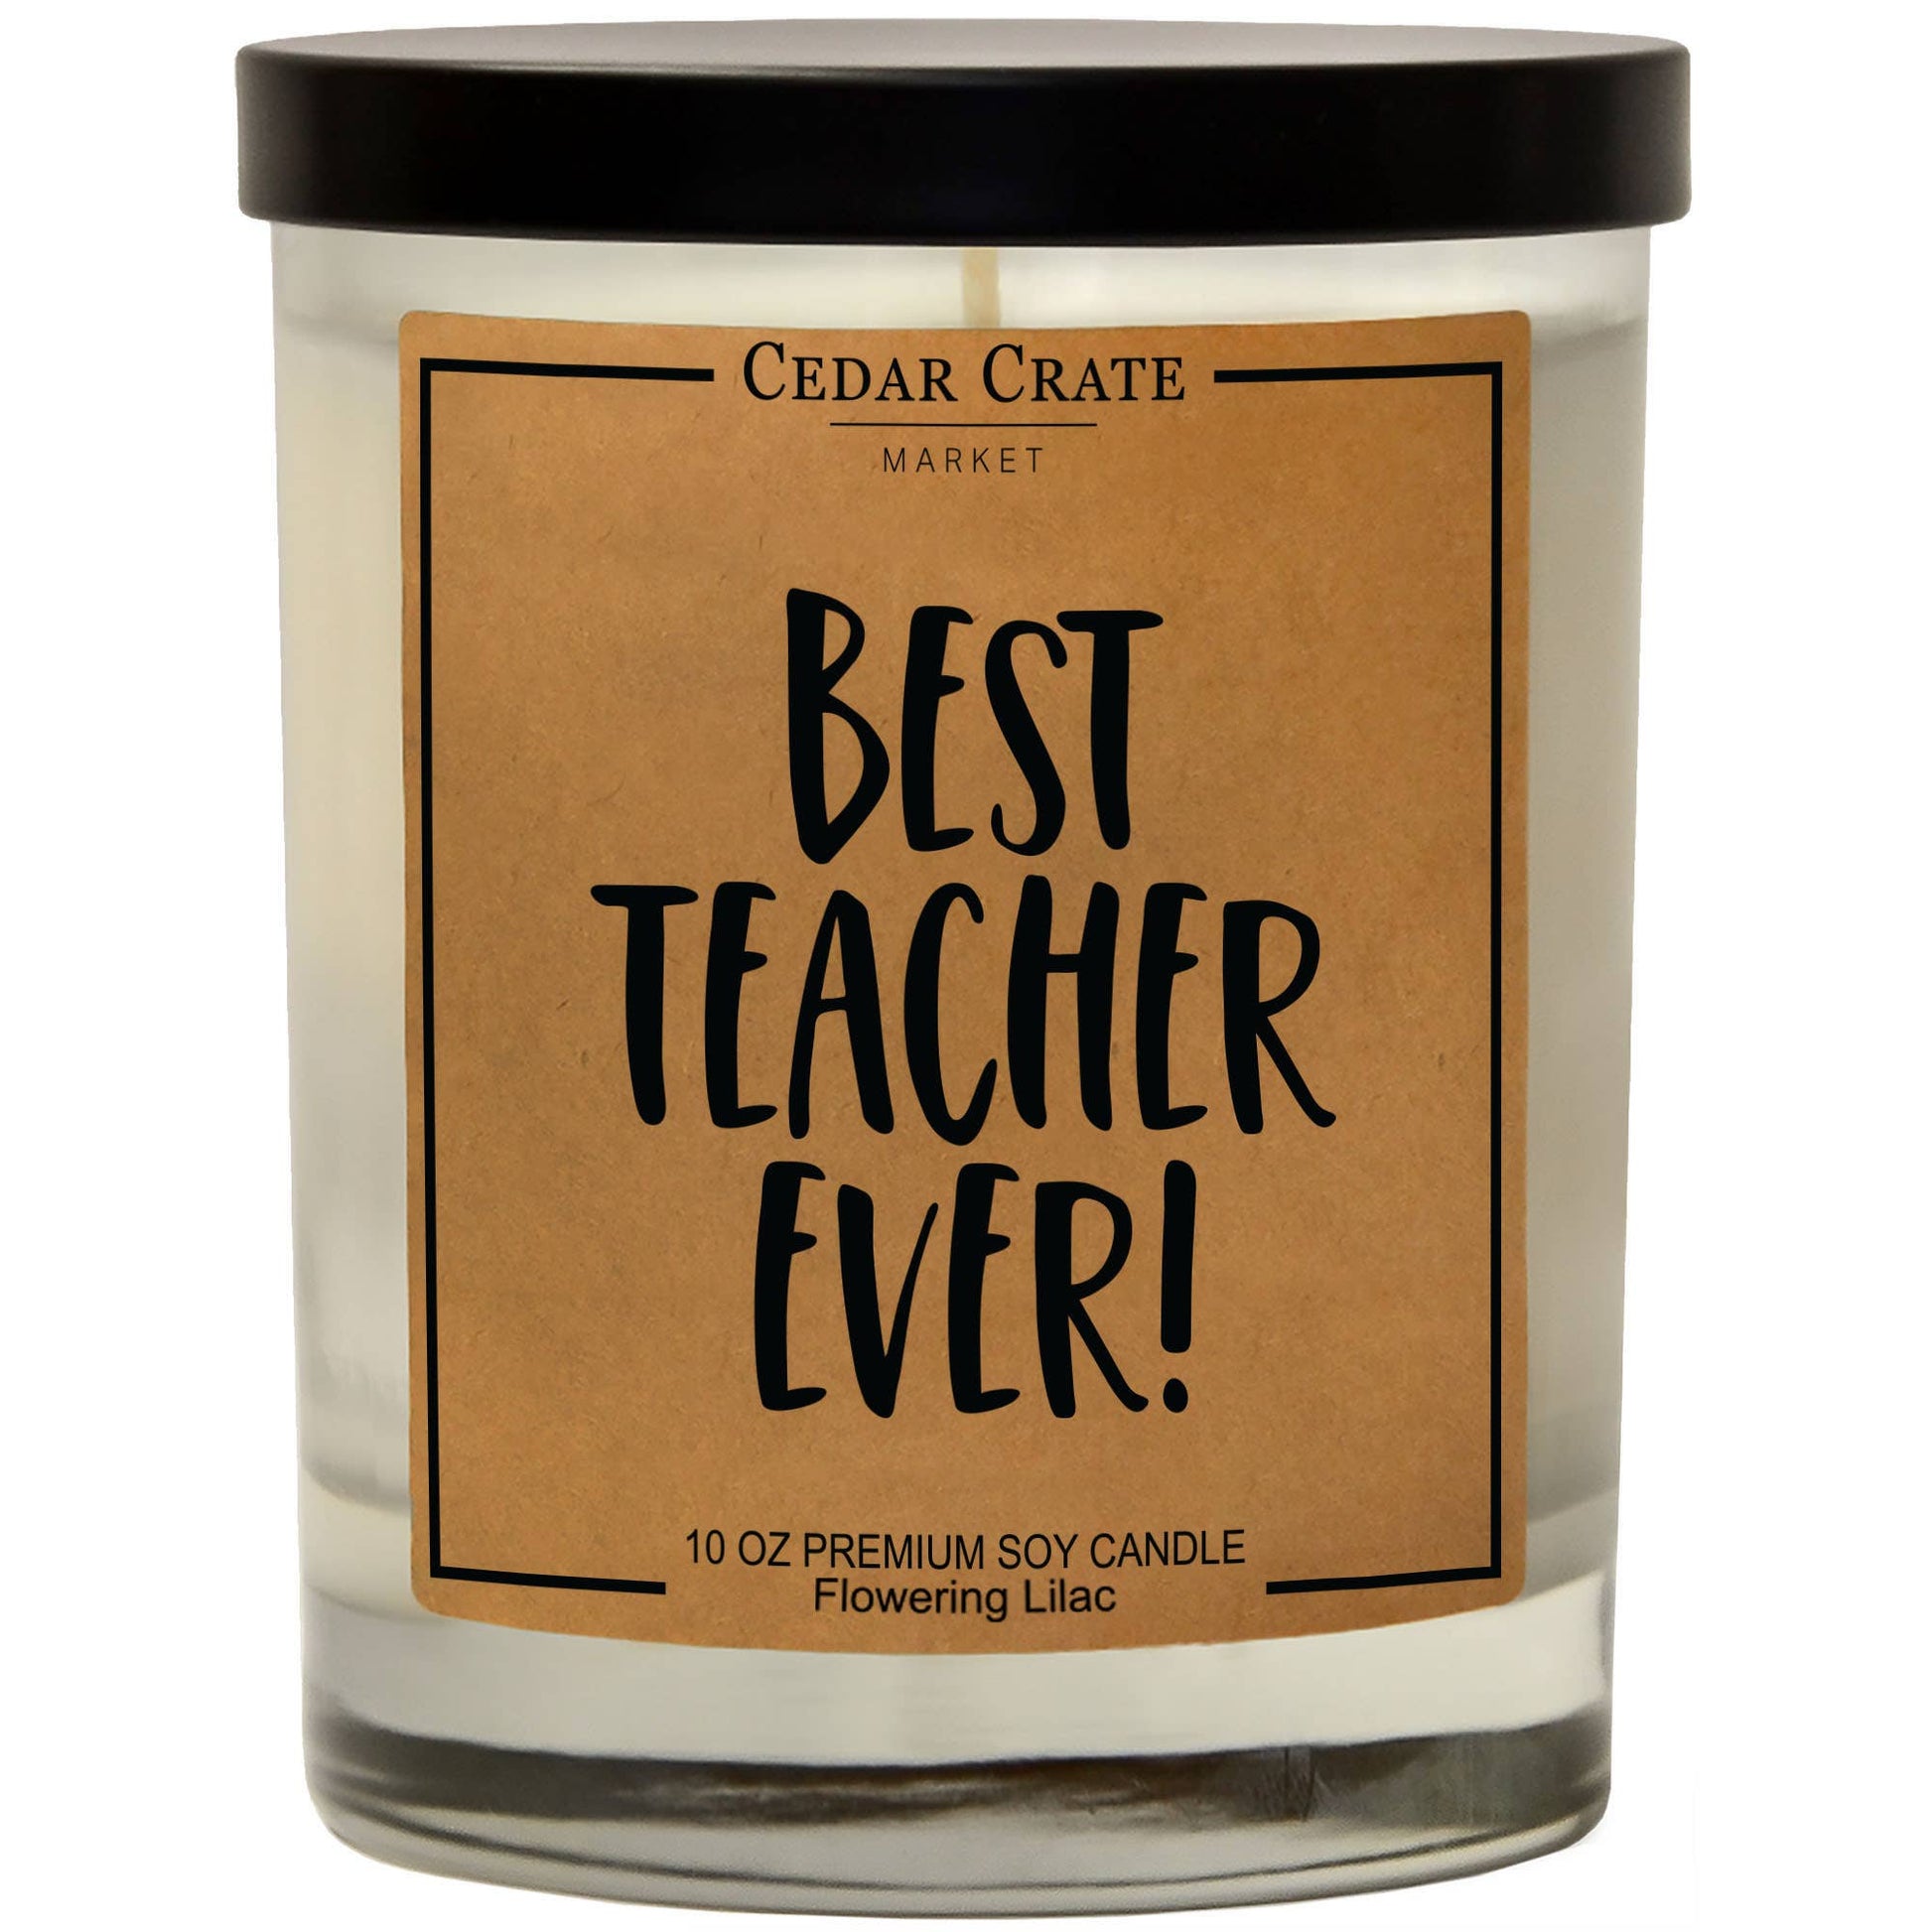 Best Teacher Ever Soy Candlei Core Cedar Crate Market